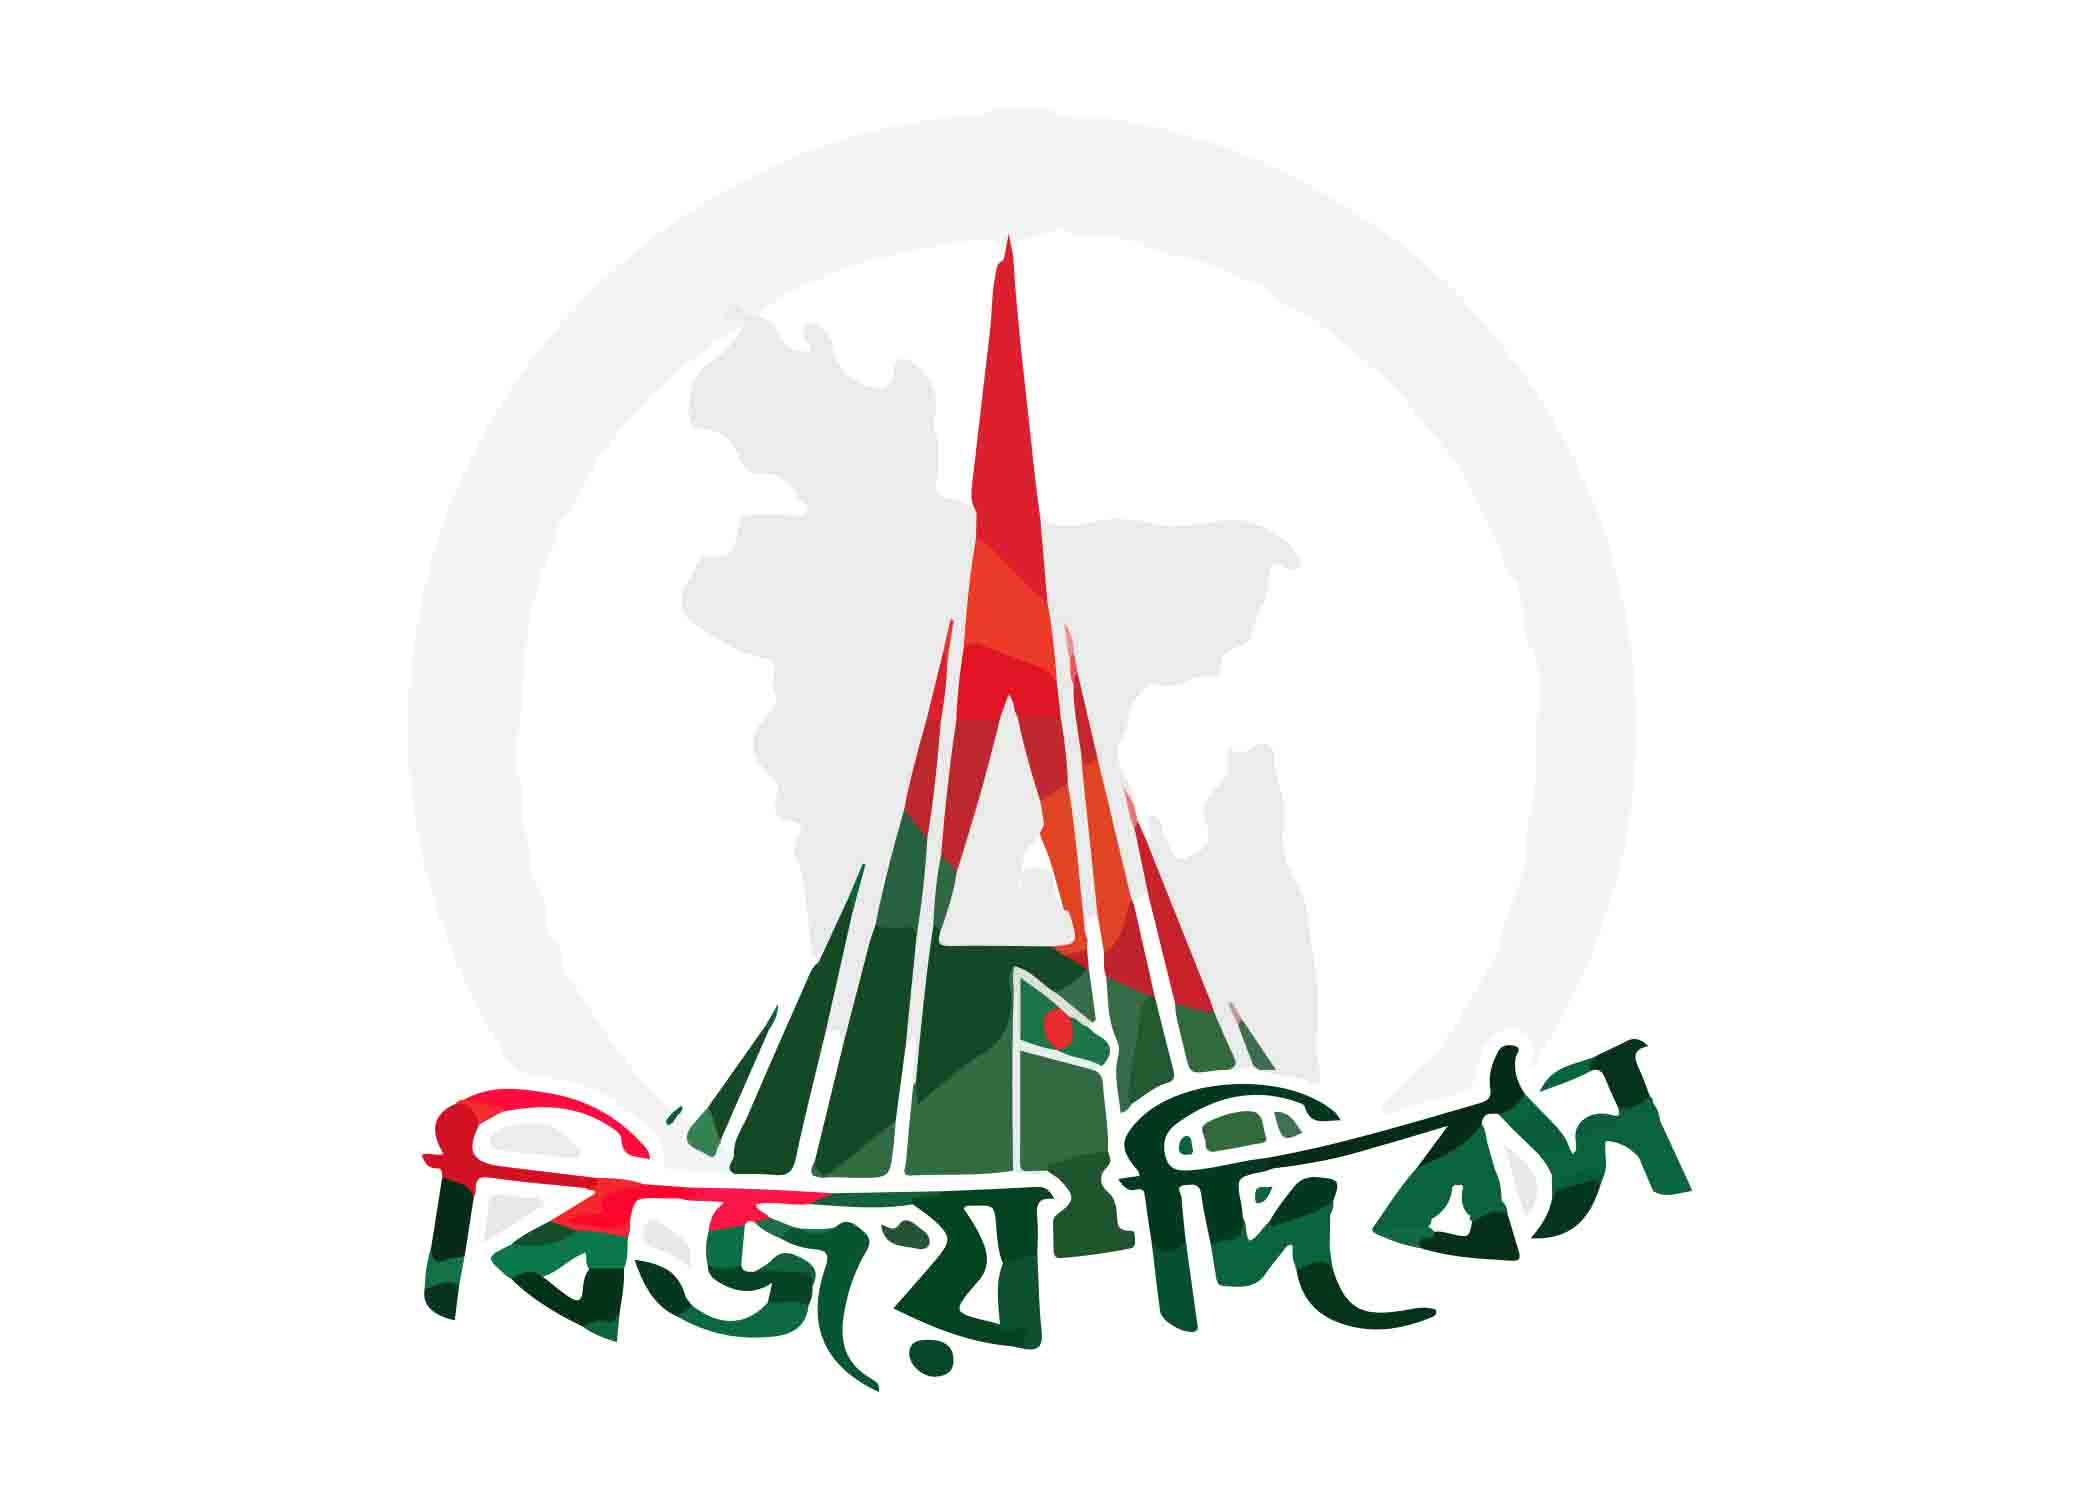 বিজয় দিবস টাইপোগ্রাফি । Bangla Typography PNG